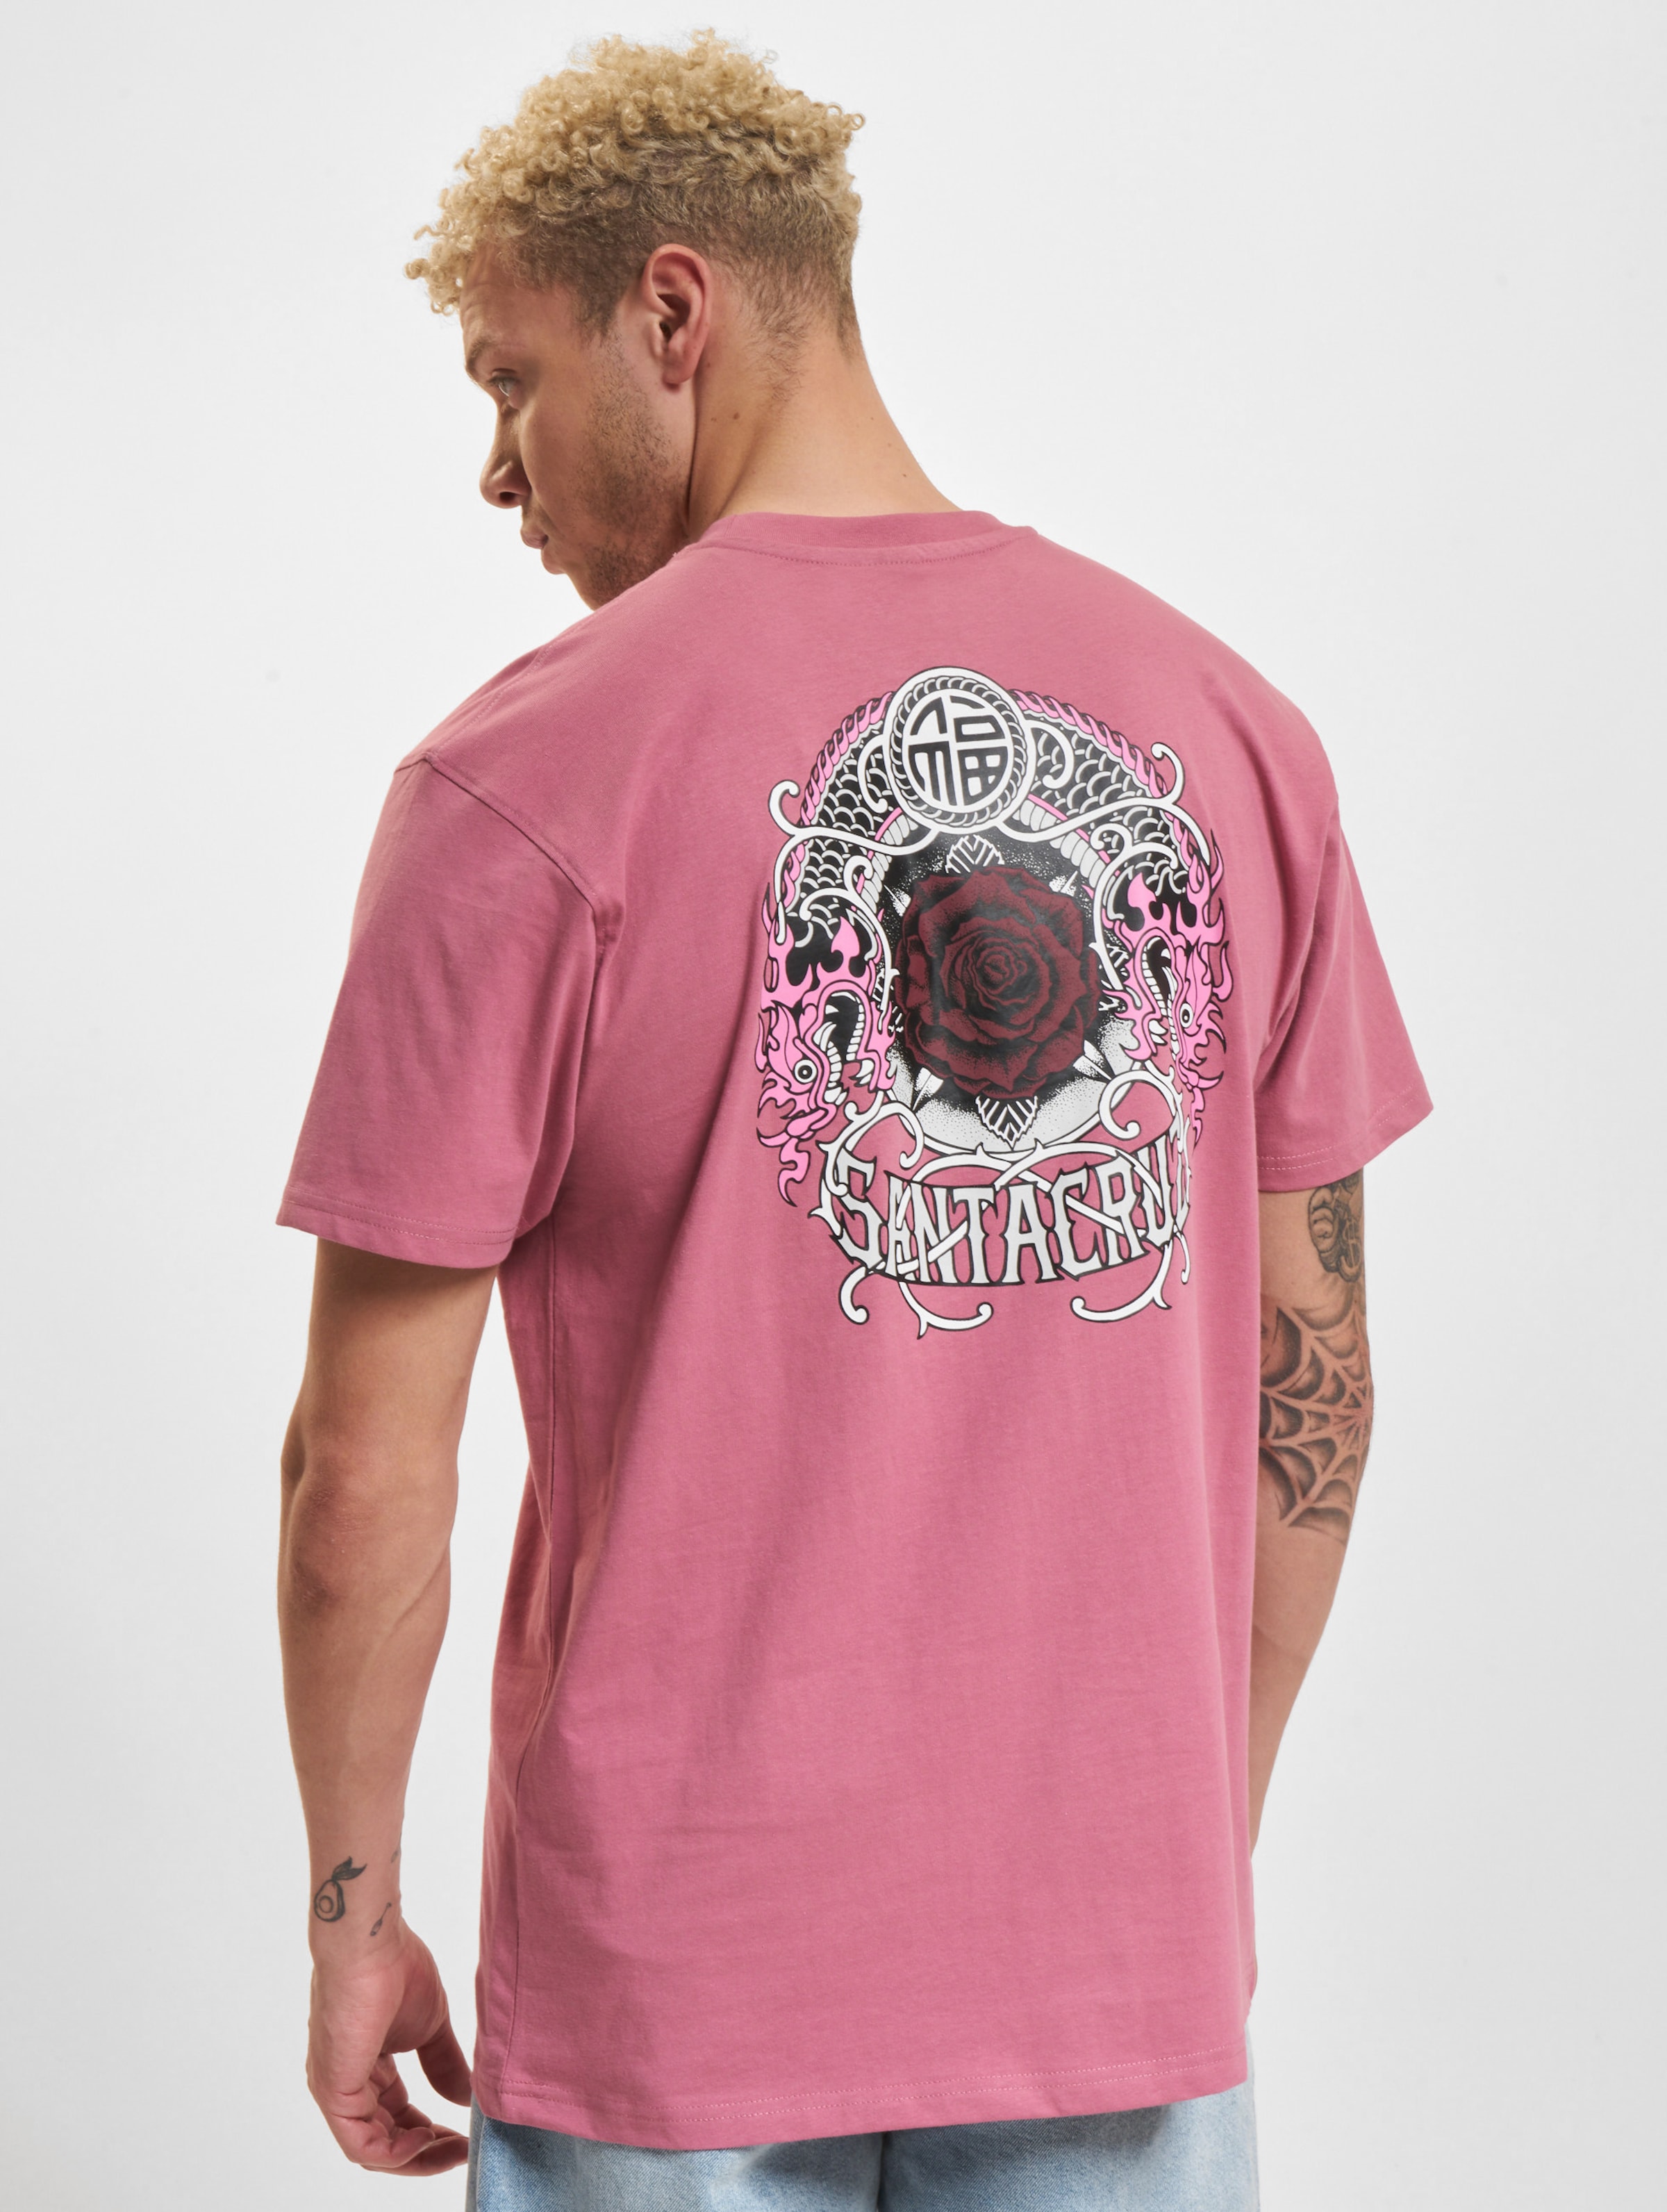 Santa Cruz Dressen Rose Crew One T-Shirt Männer,Unisex op kleur roze, Maat XL